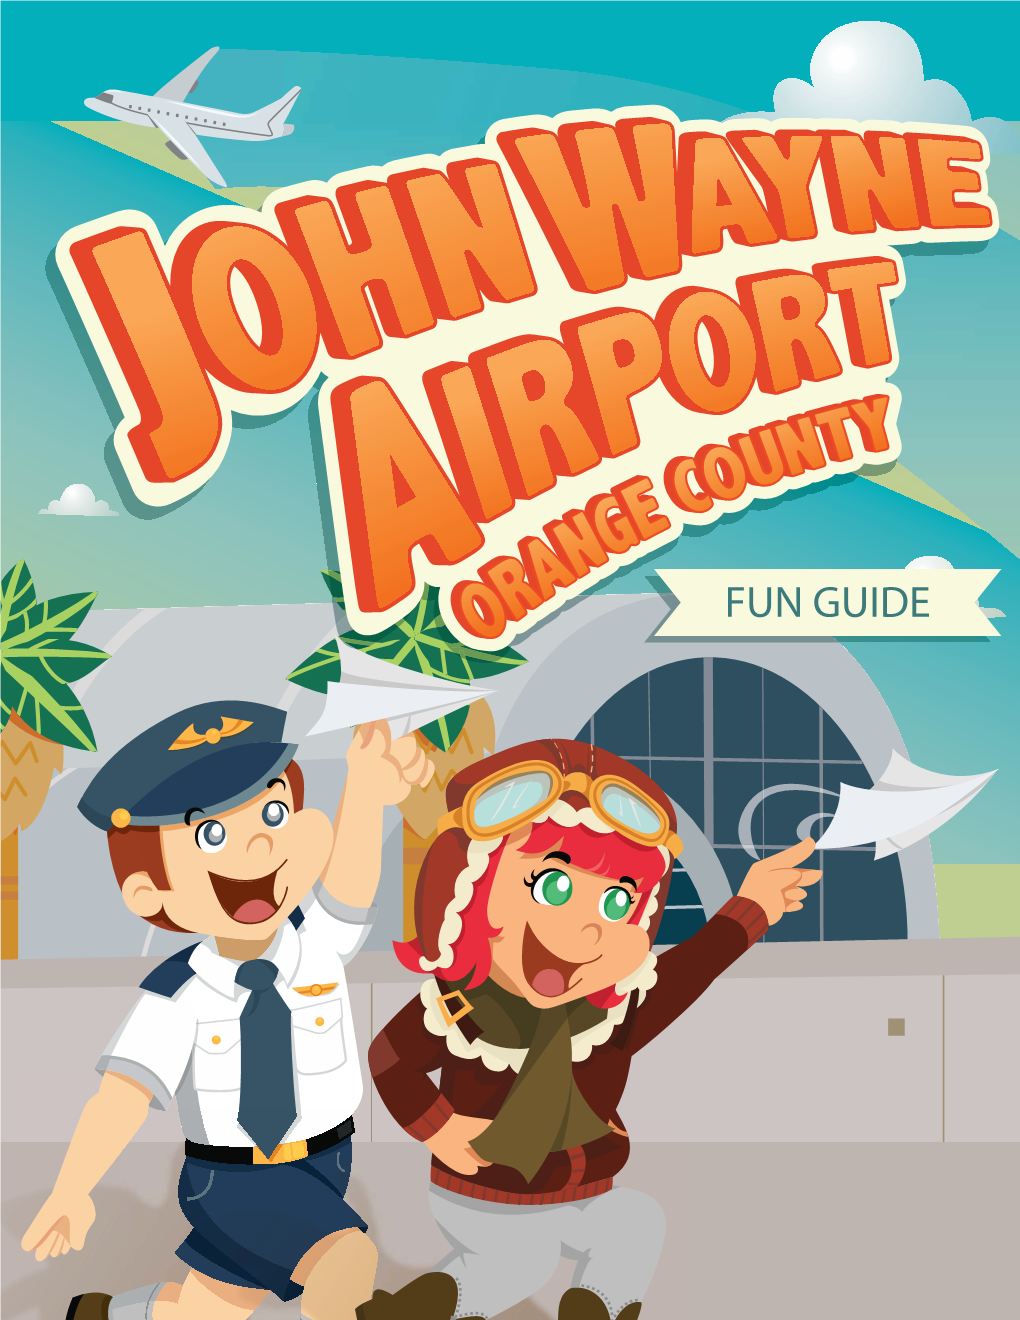 John Wayne Airport, Orange County Fun Guide